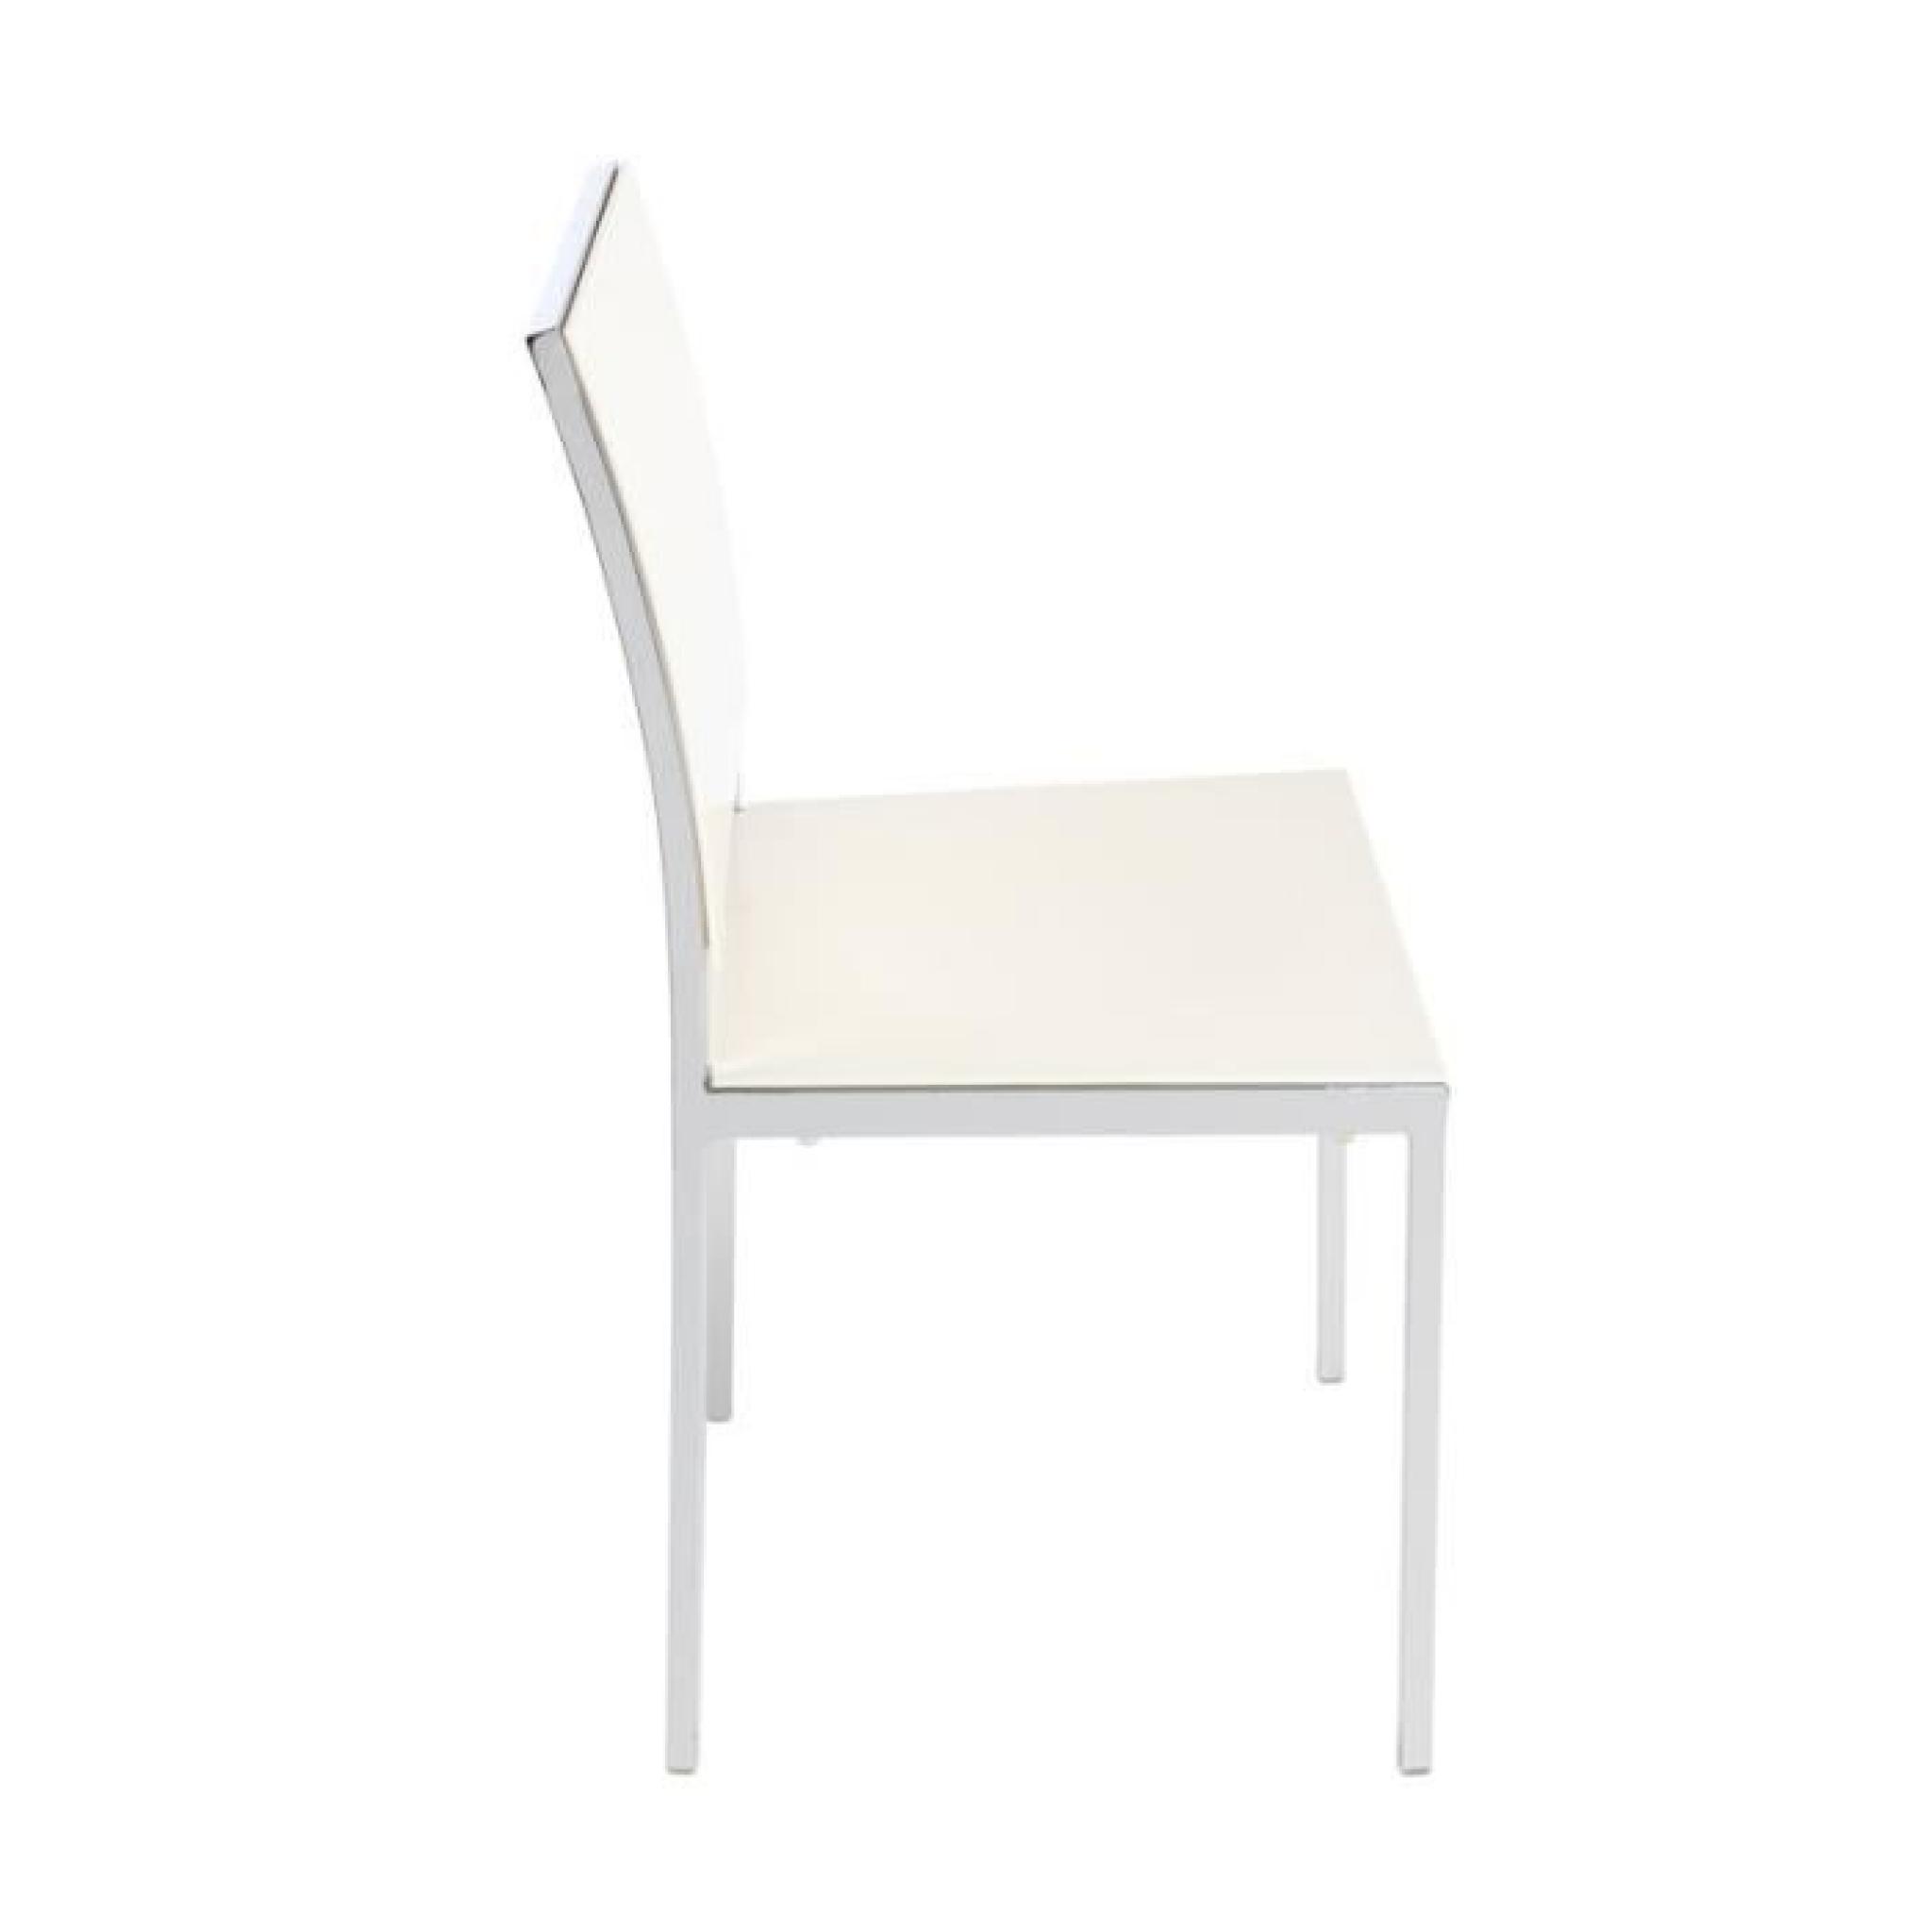 Miliboo - Lot de 2 chaises design laquées blanc… pas cher